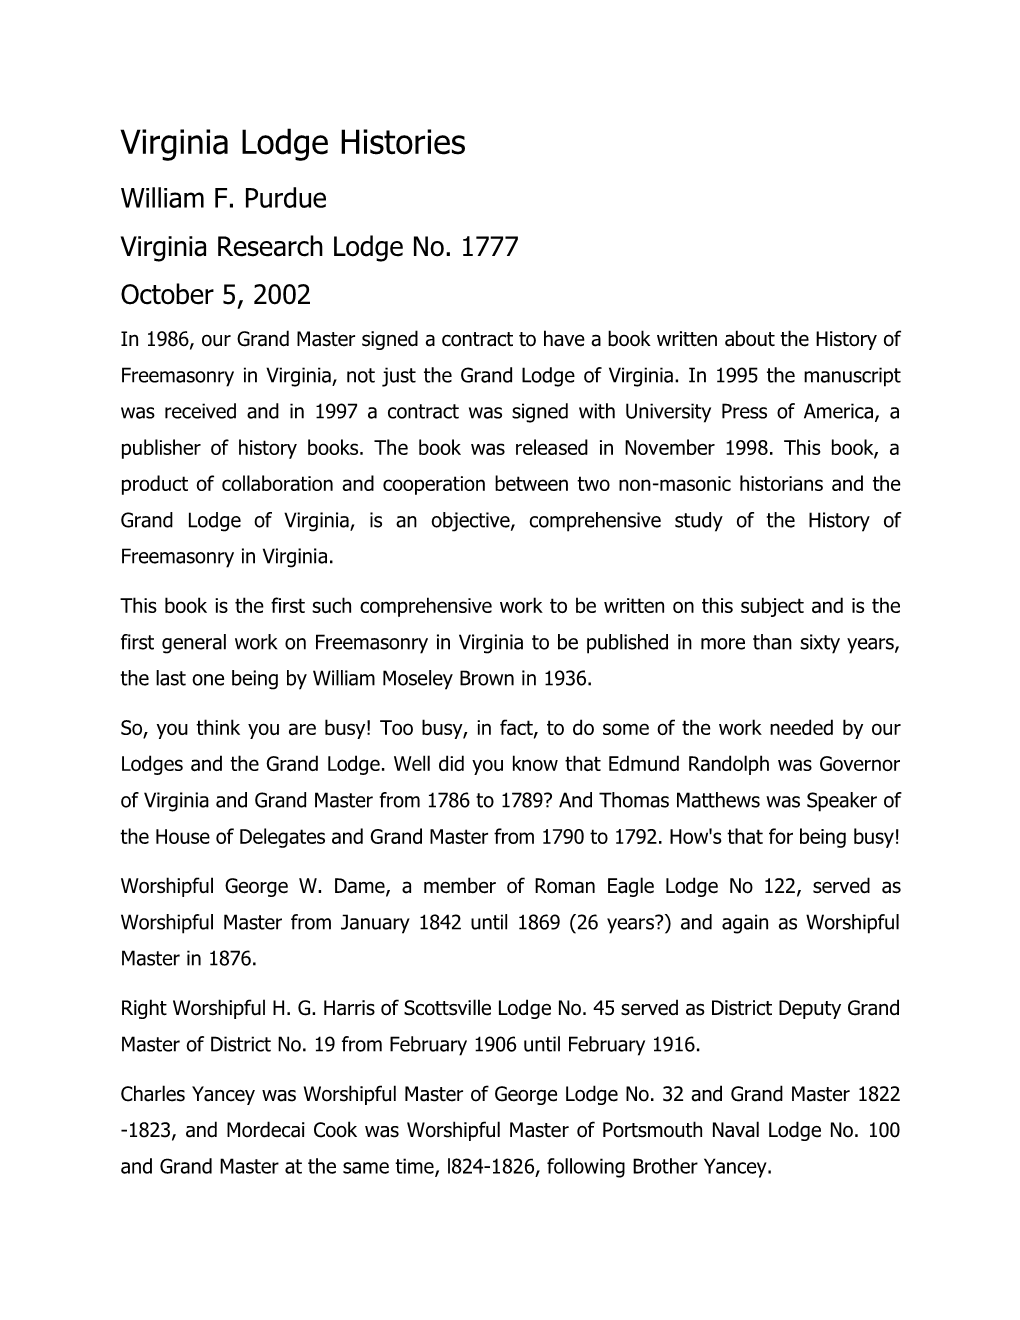 Virginia Lodge Histories William F